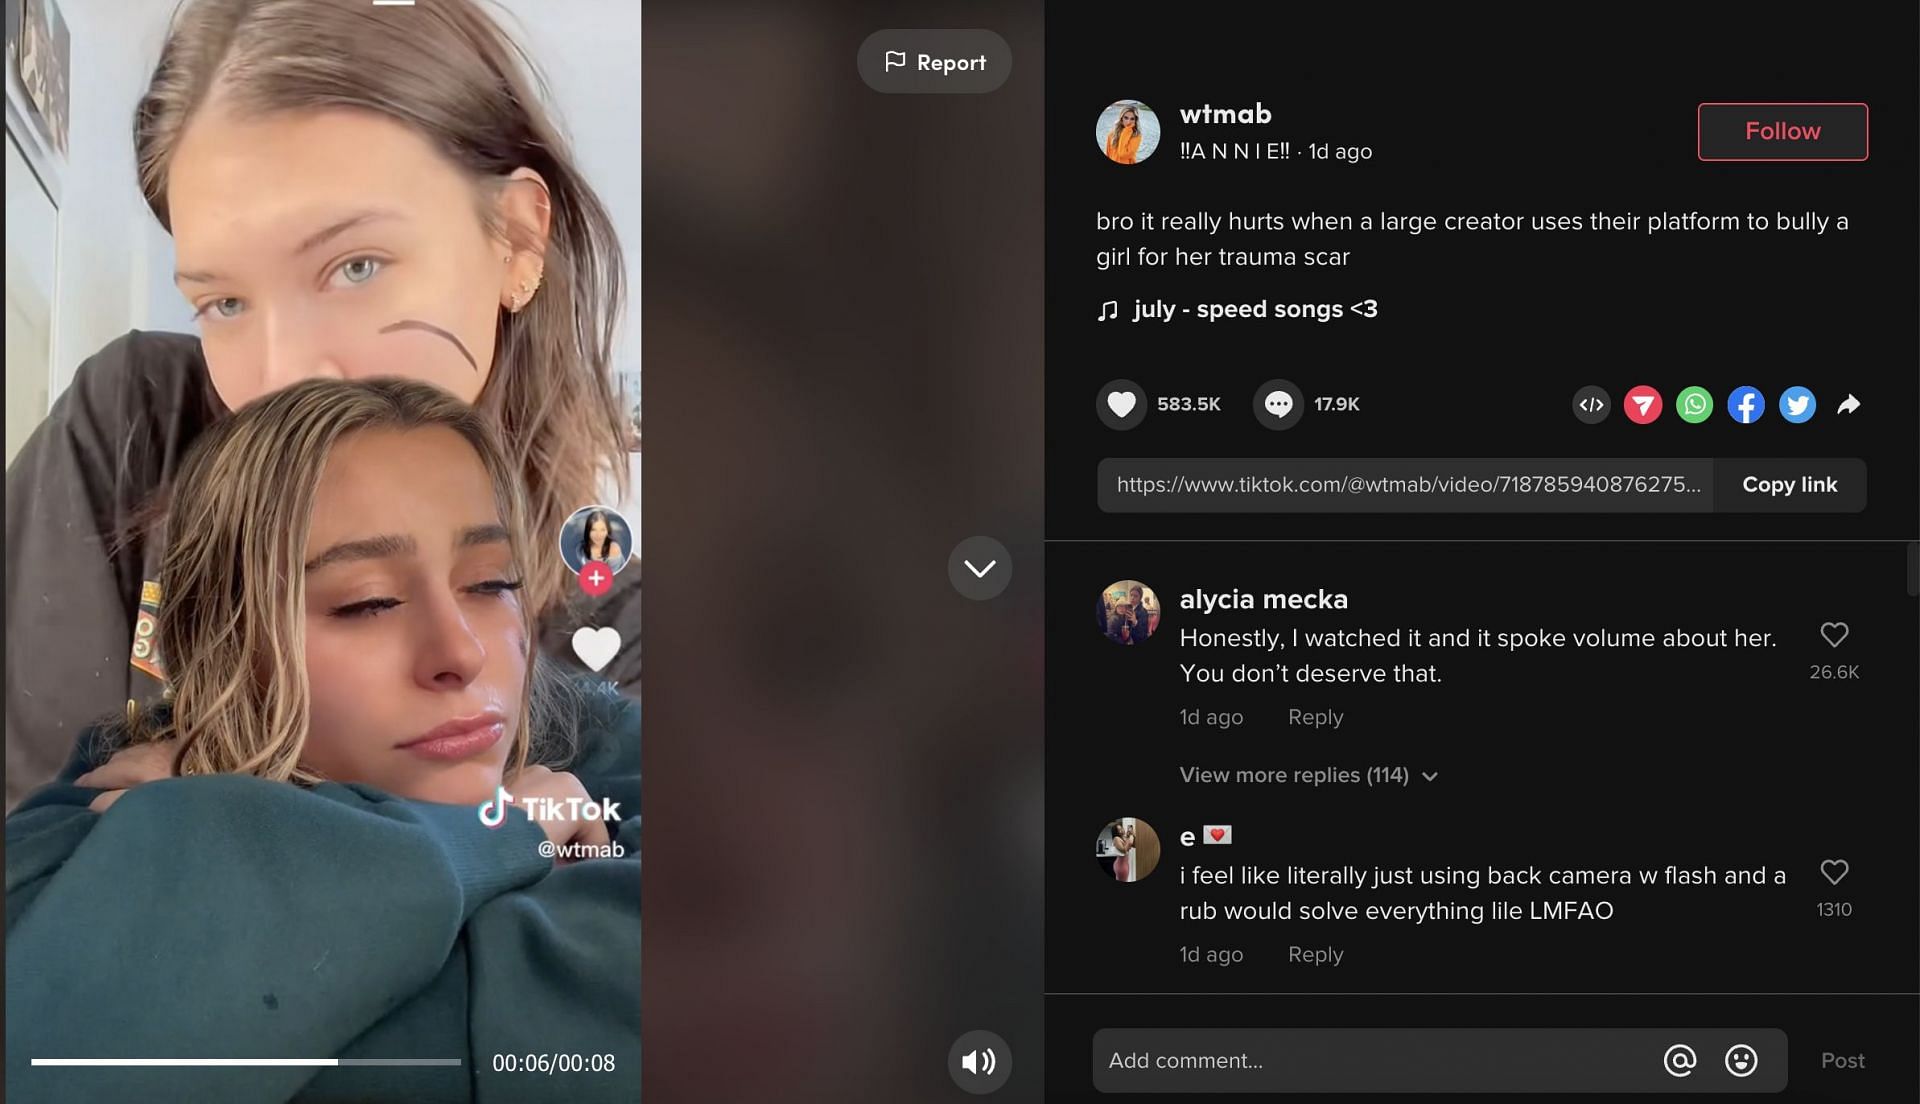 Annie created a TikTok video alleging that Mads bullied her in her recent TikTok video. (Image via TikTok)